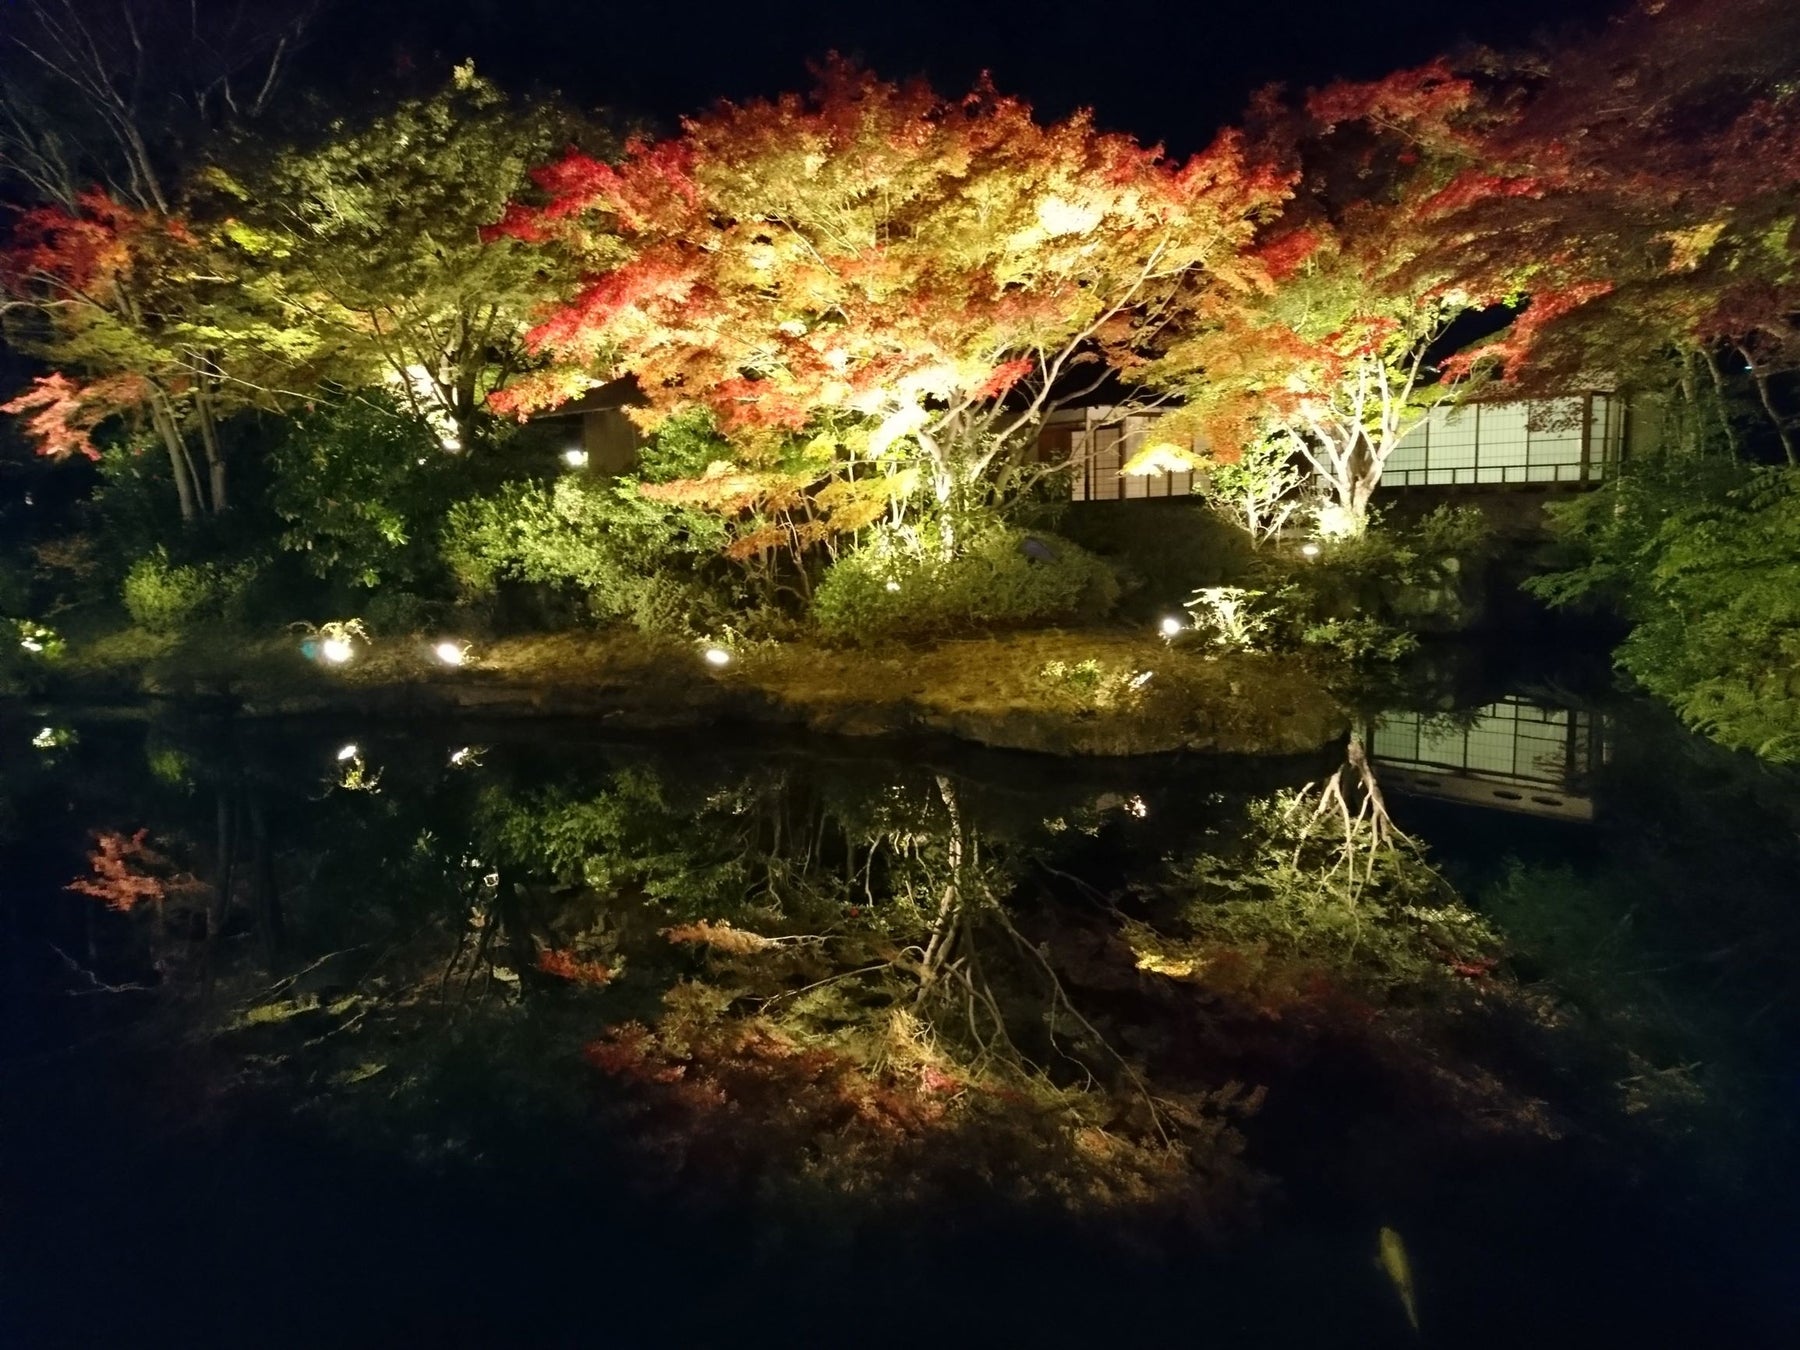 日本庭園に建つ茶寮のライトアップ風景。池に映る紅葉も美しい